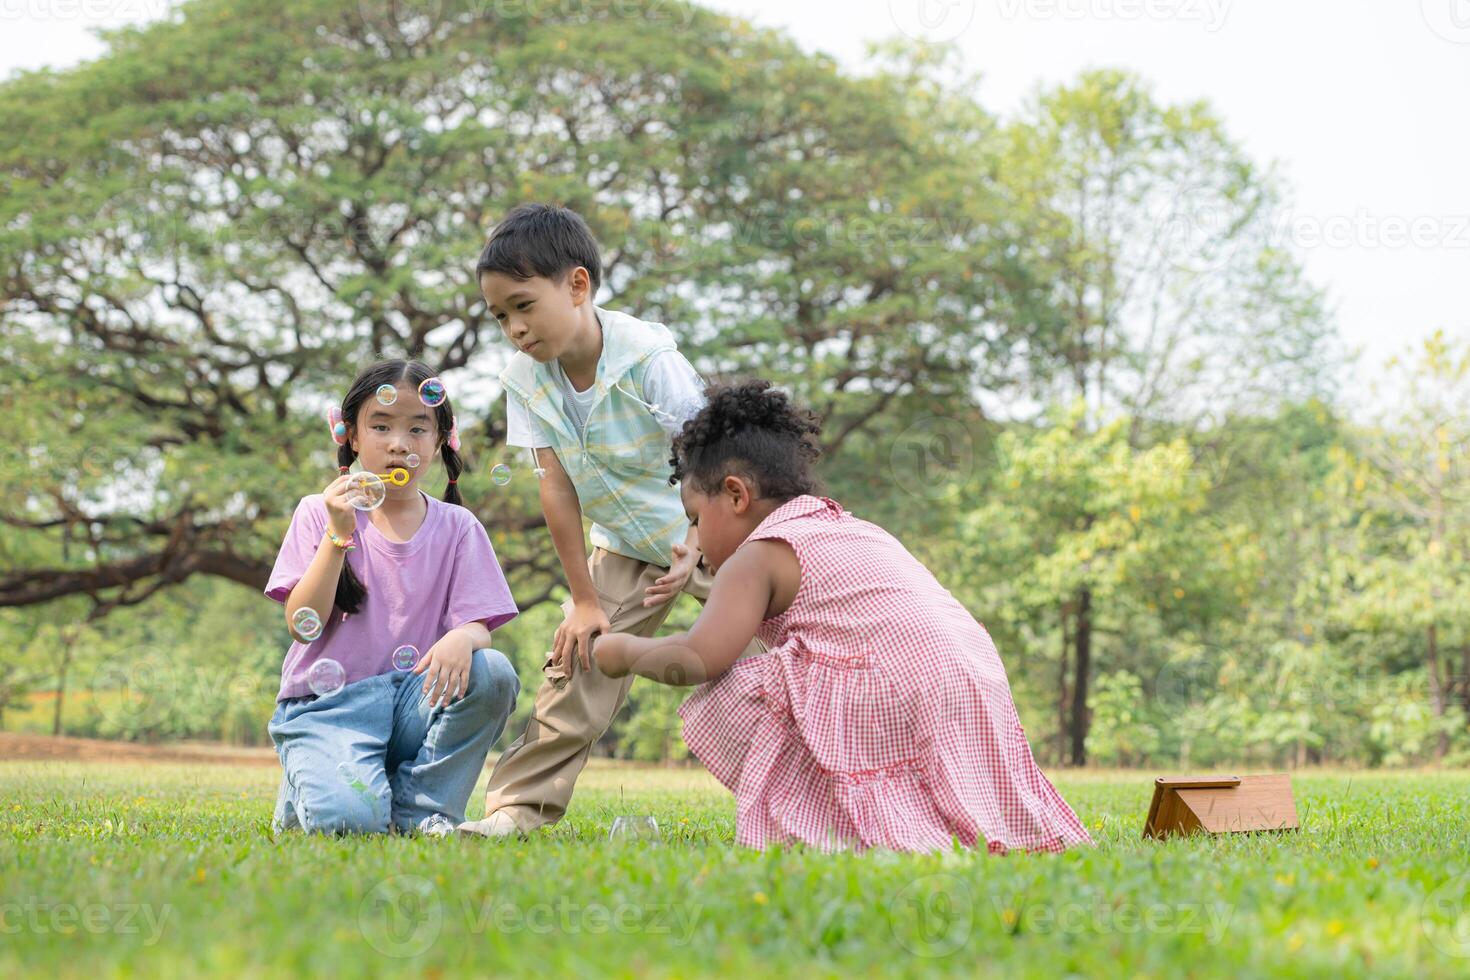 niños sentado en el parque con soplo aire burbuja, rodeado por verdor y naturaleza foto